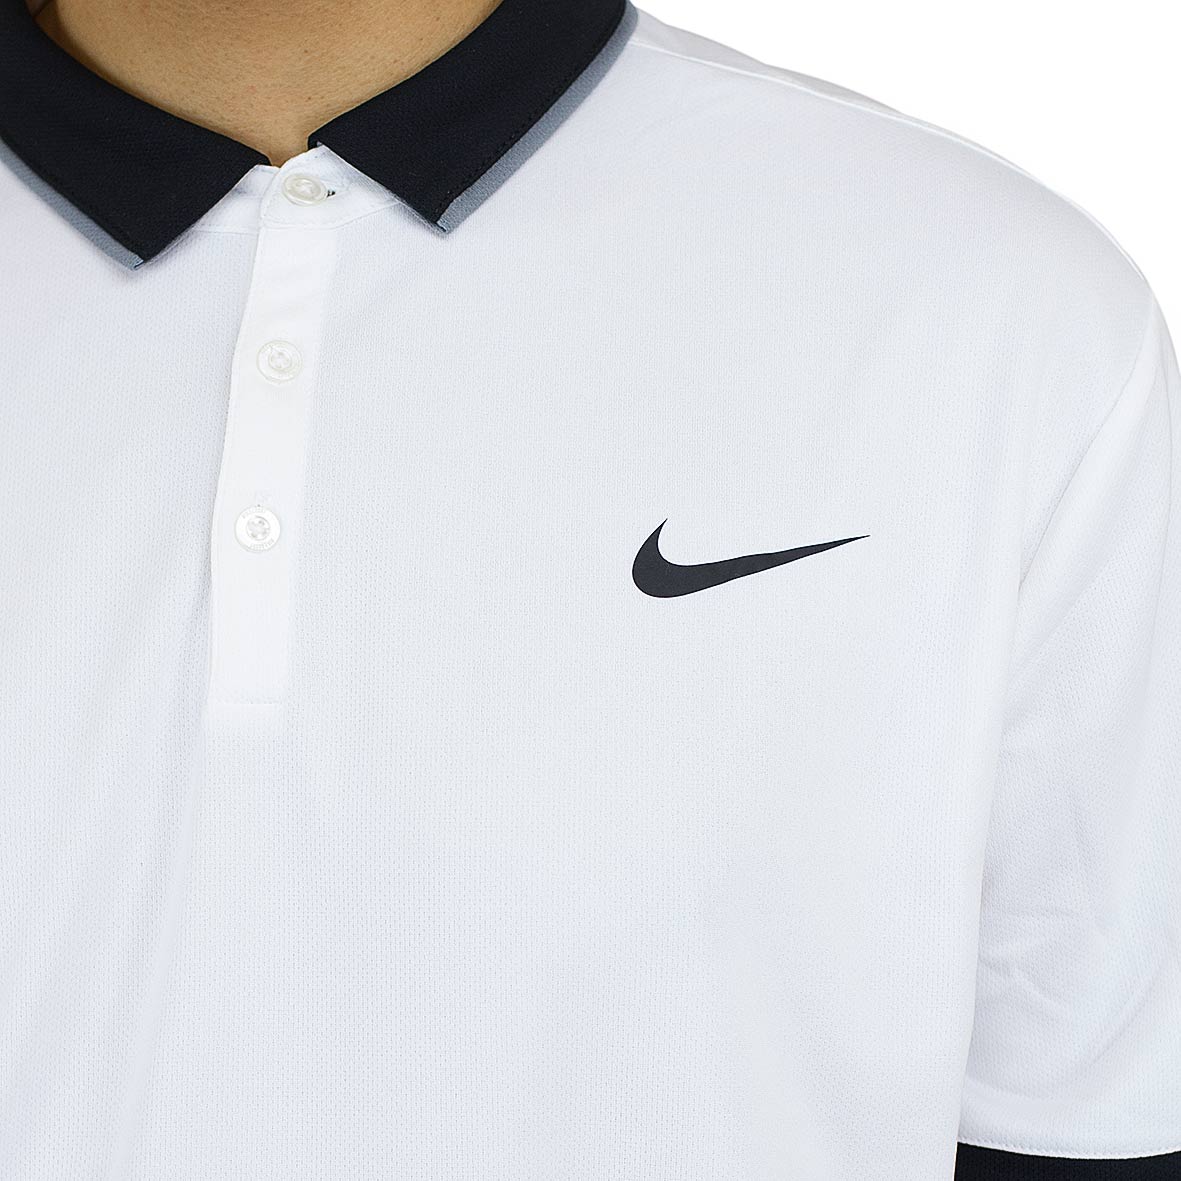 ☆ Nike Poloshirt Court Dry Tennis weiß/schwarz - hier bestellen!